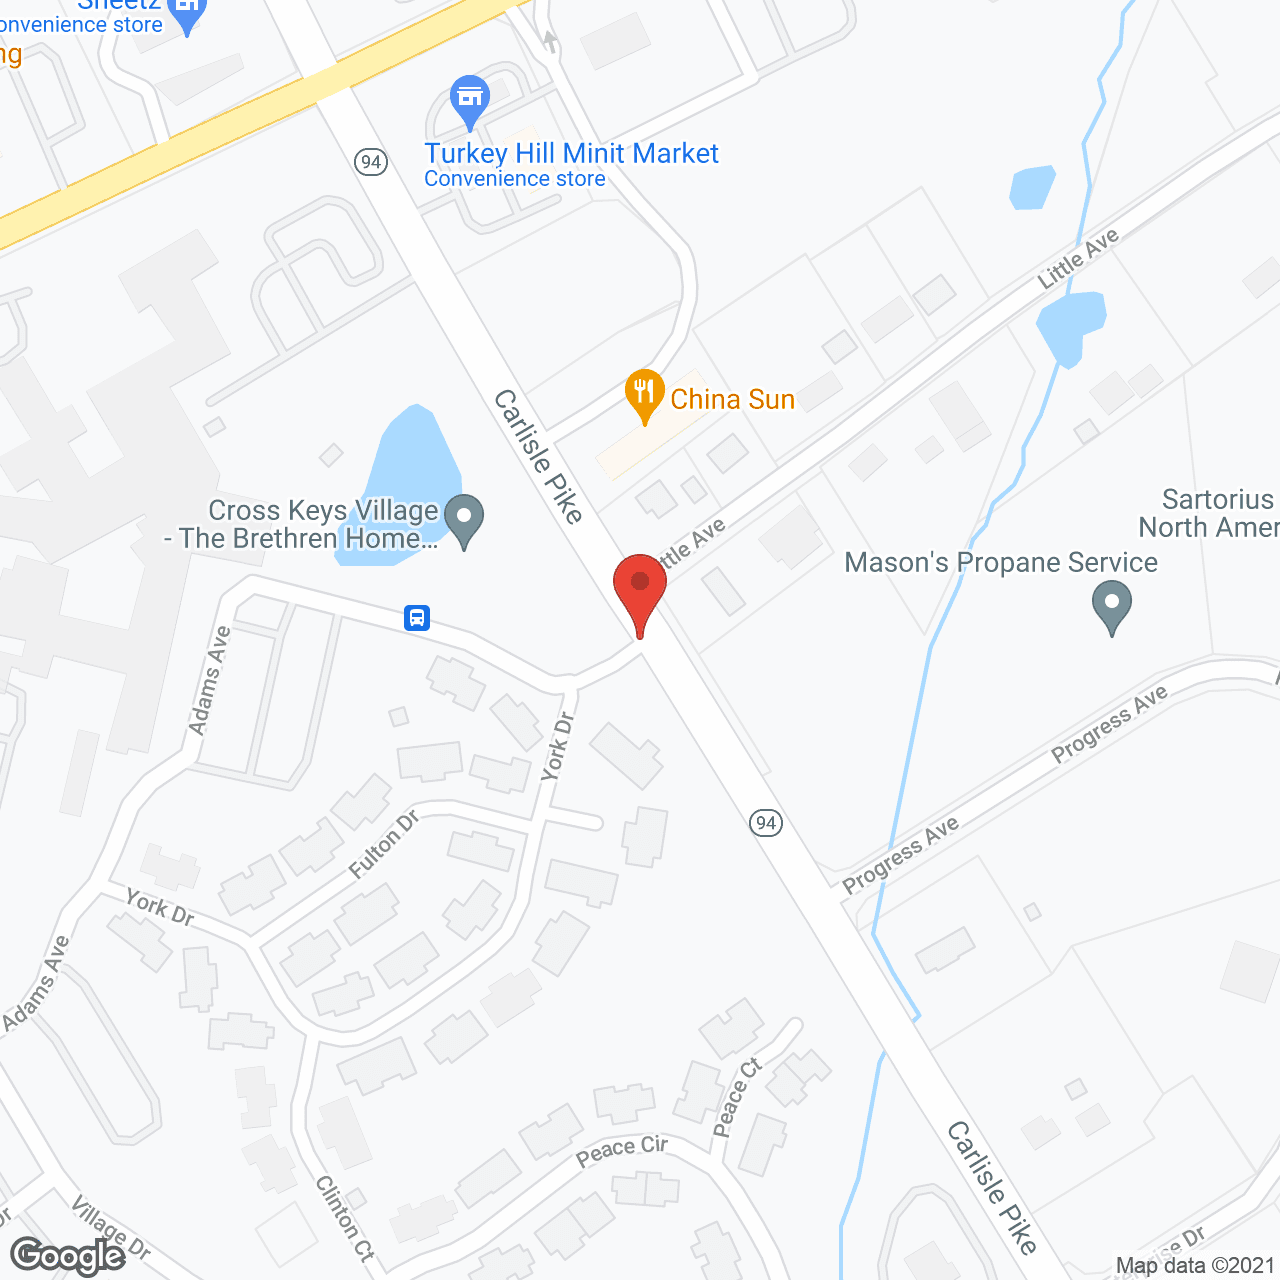 Cross Keys Village in google map